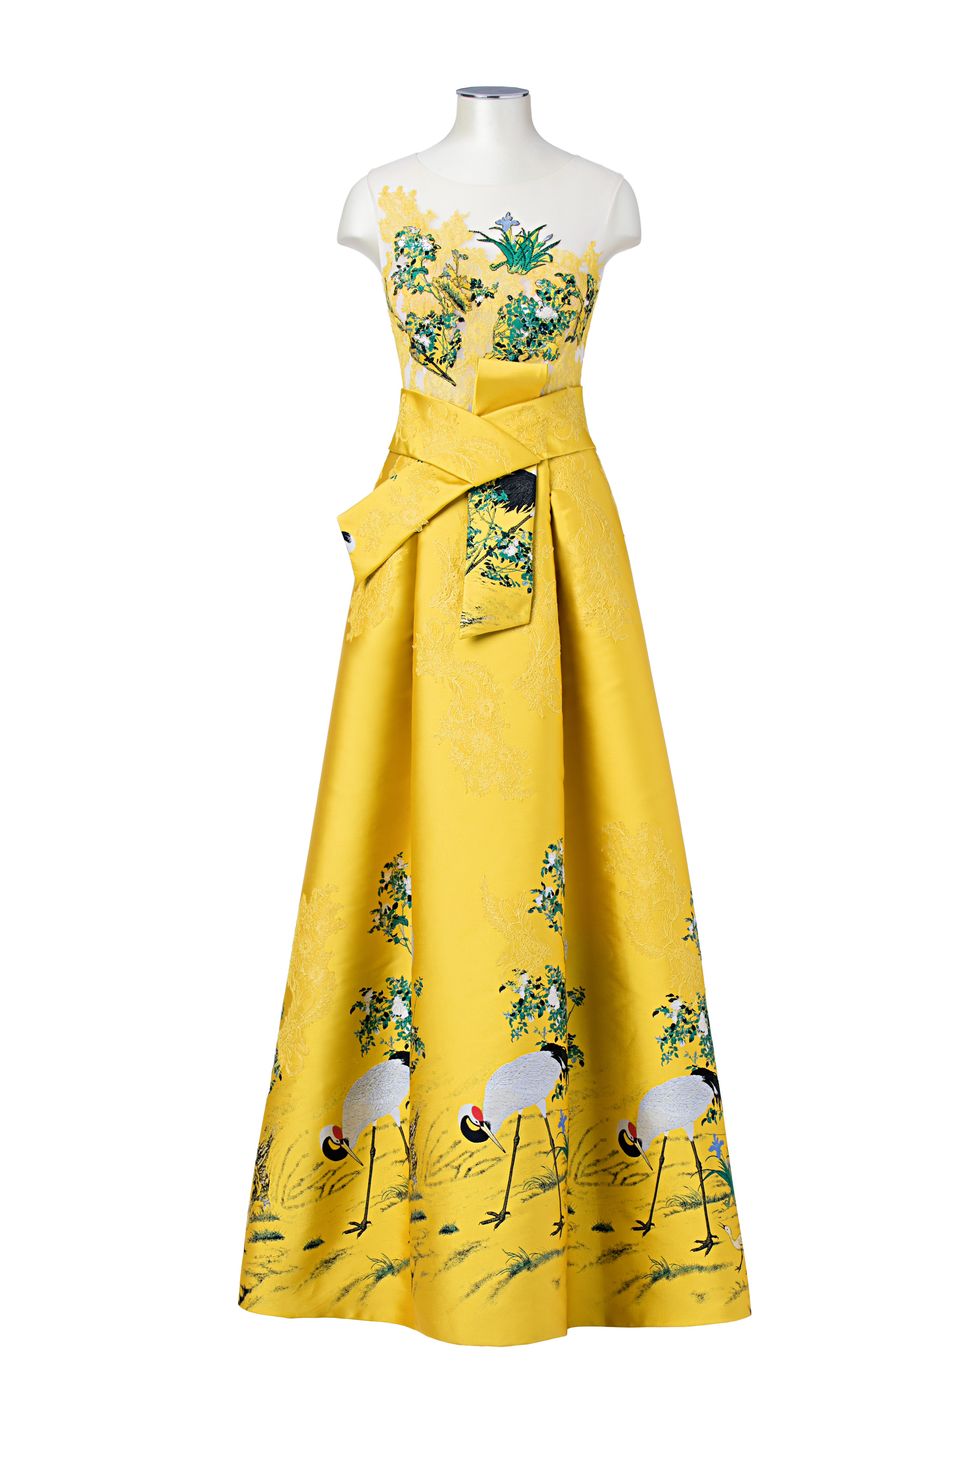 Ecco un outfit per invitate a un matrimonio, abito da cerimonia giallo di Atelier Emé